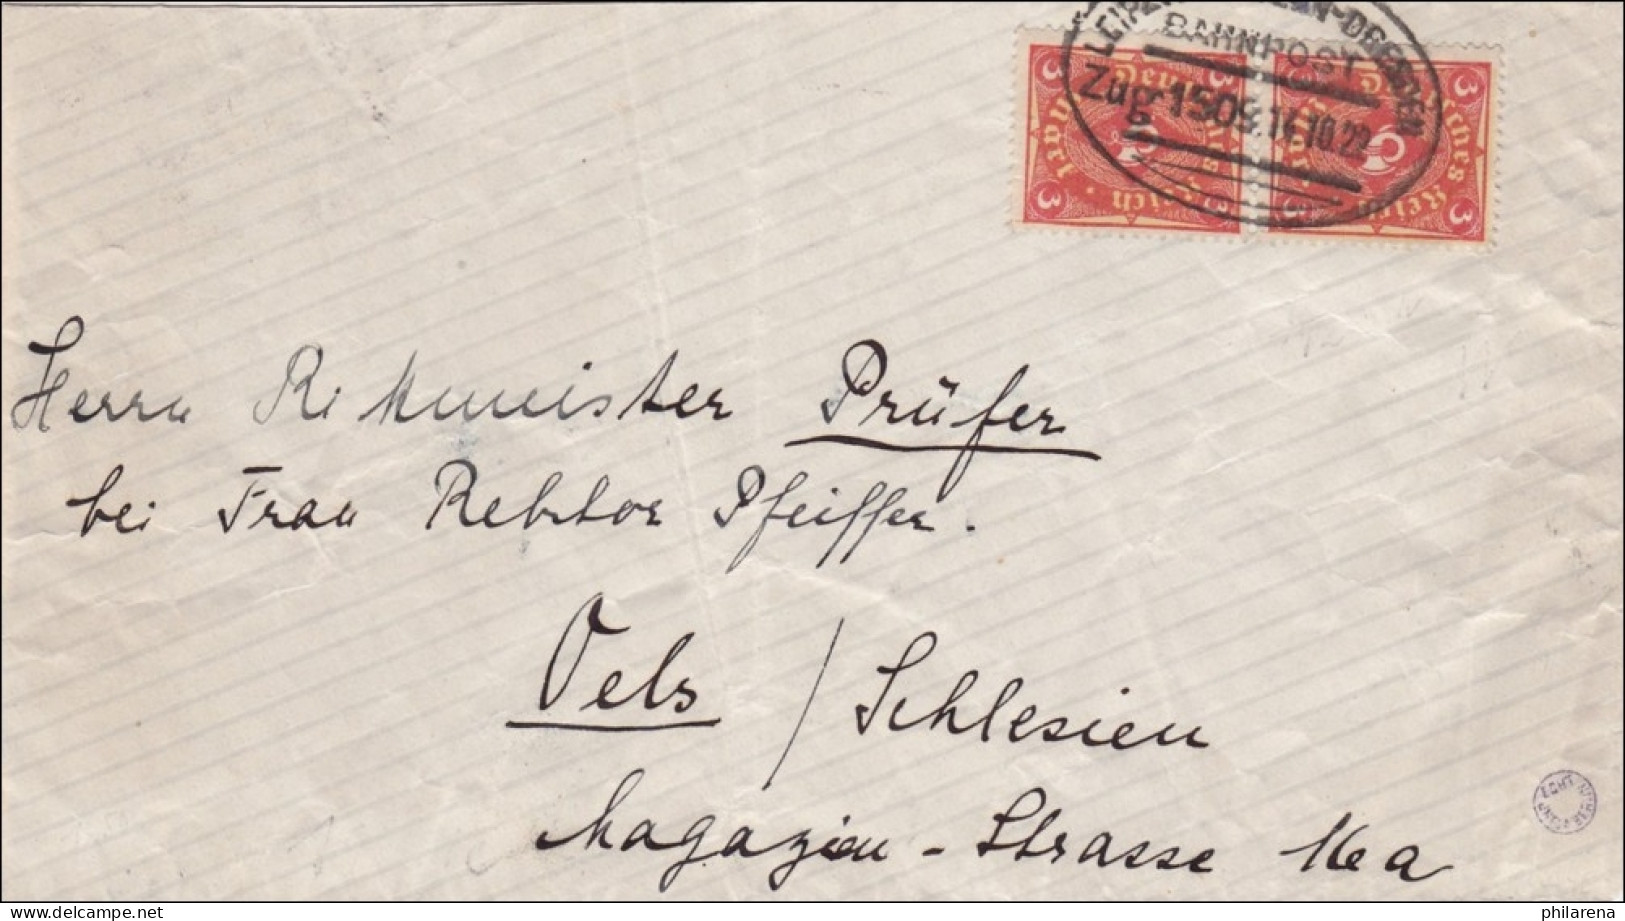 Bahnpost: Brief Aus Grimma Mit Zugstempel Leipzig - Dresden 1922 - Brieven En Documenten